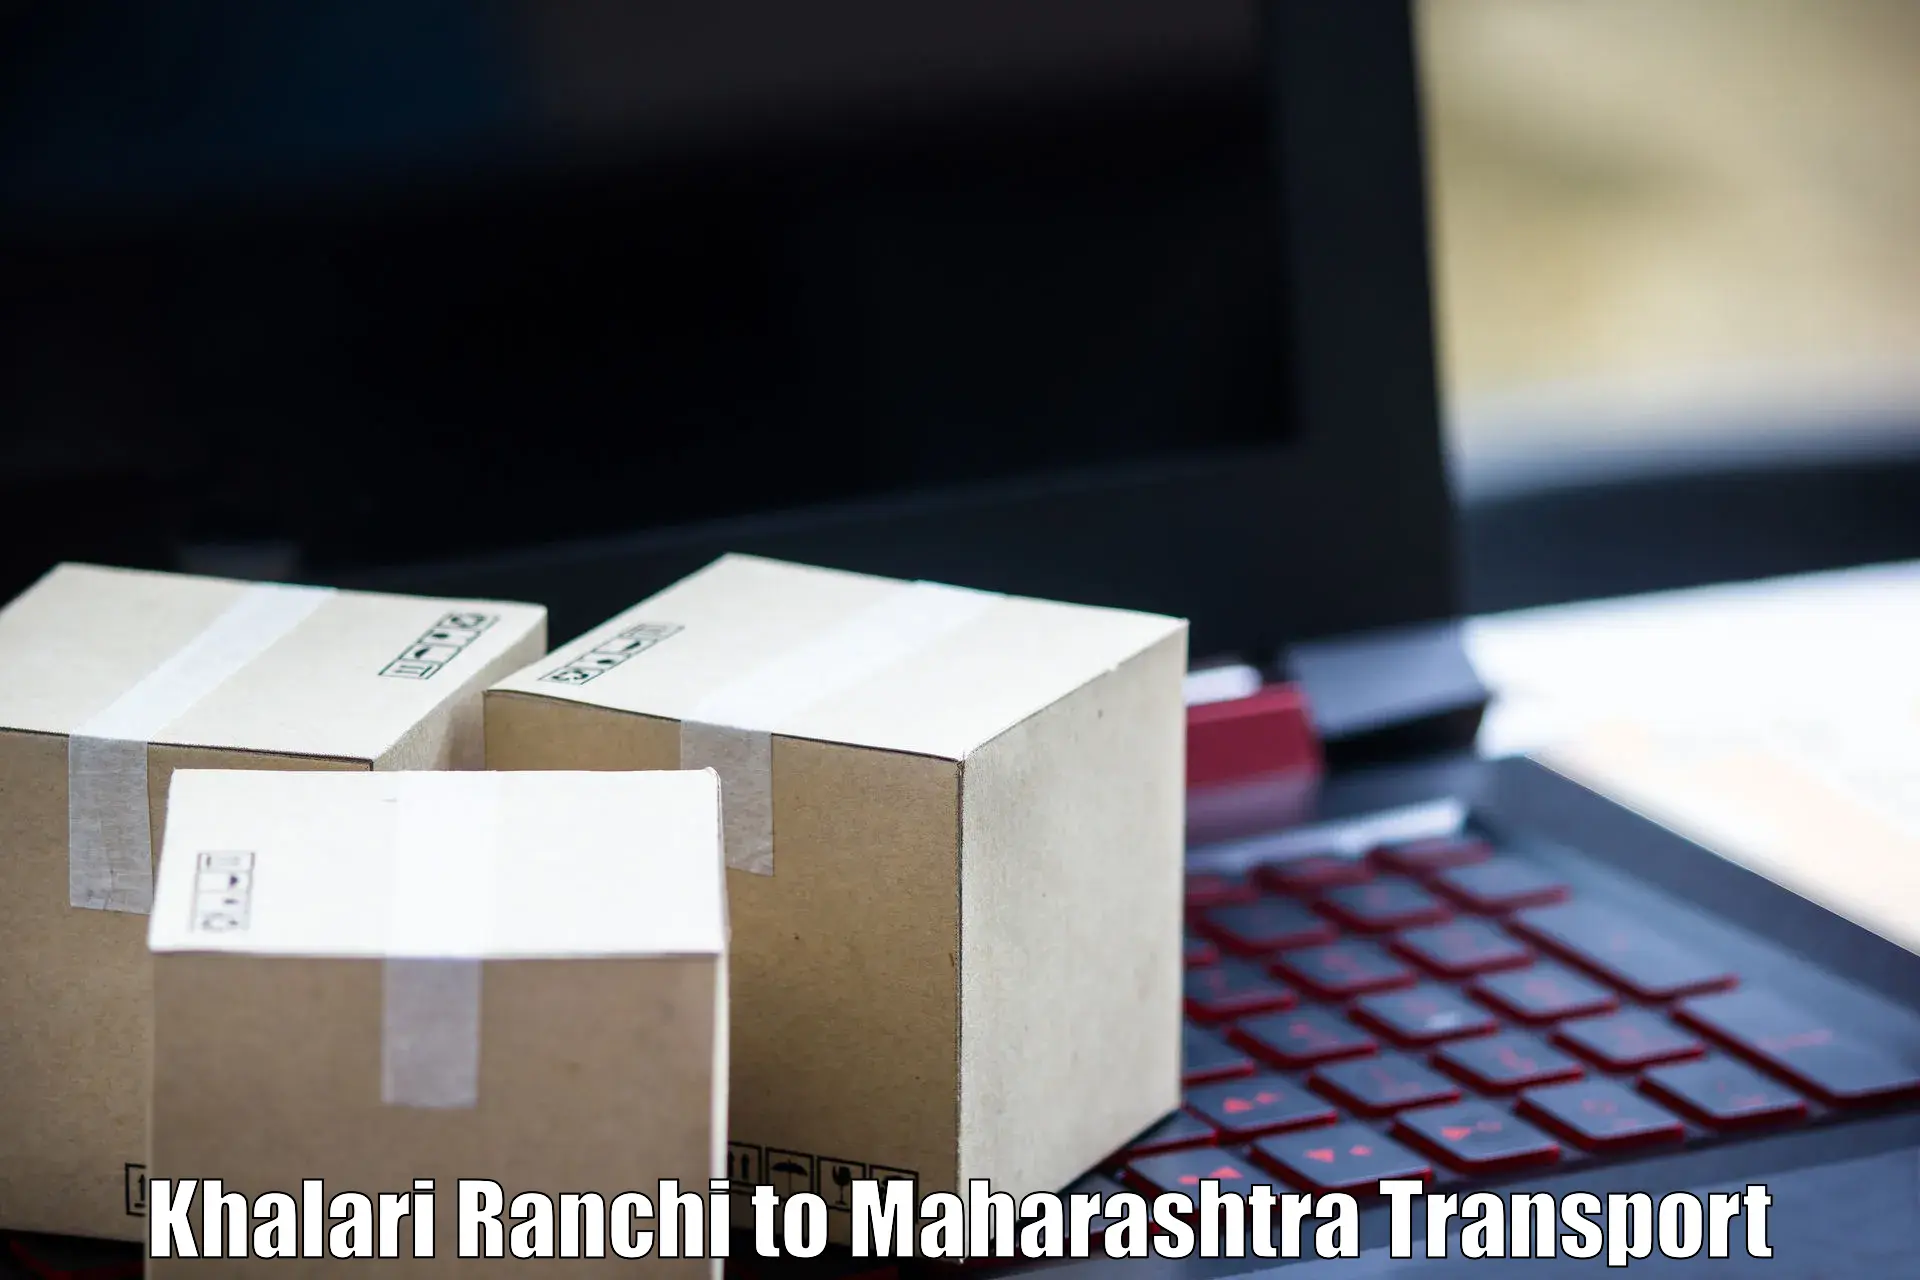 Online transport booking Khalari Ranchi to Ratnagiri